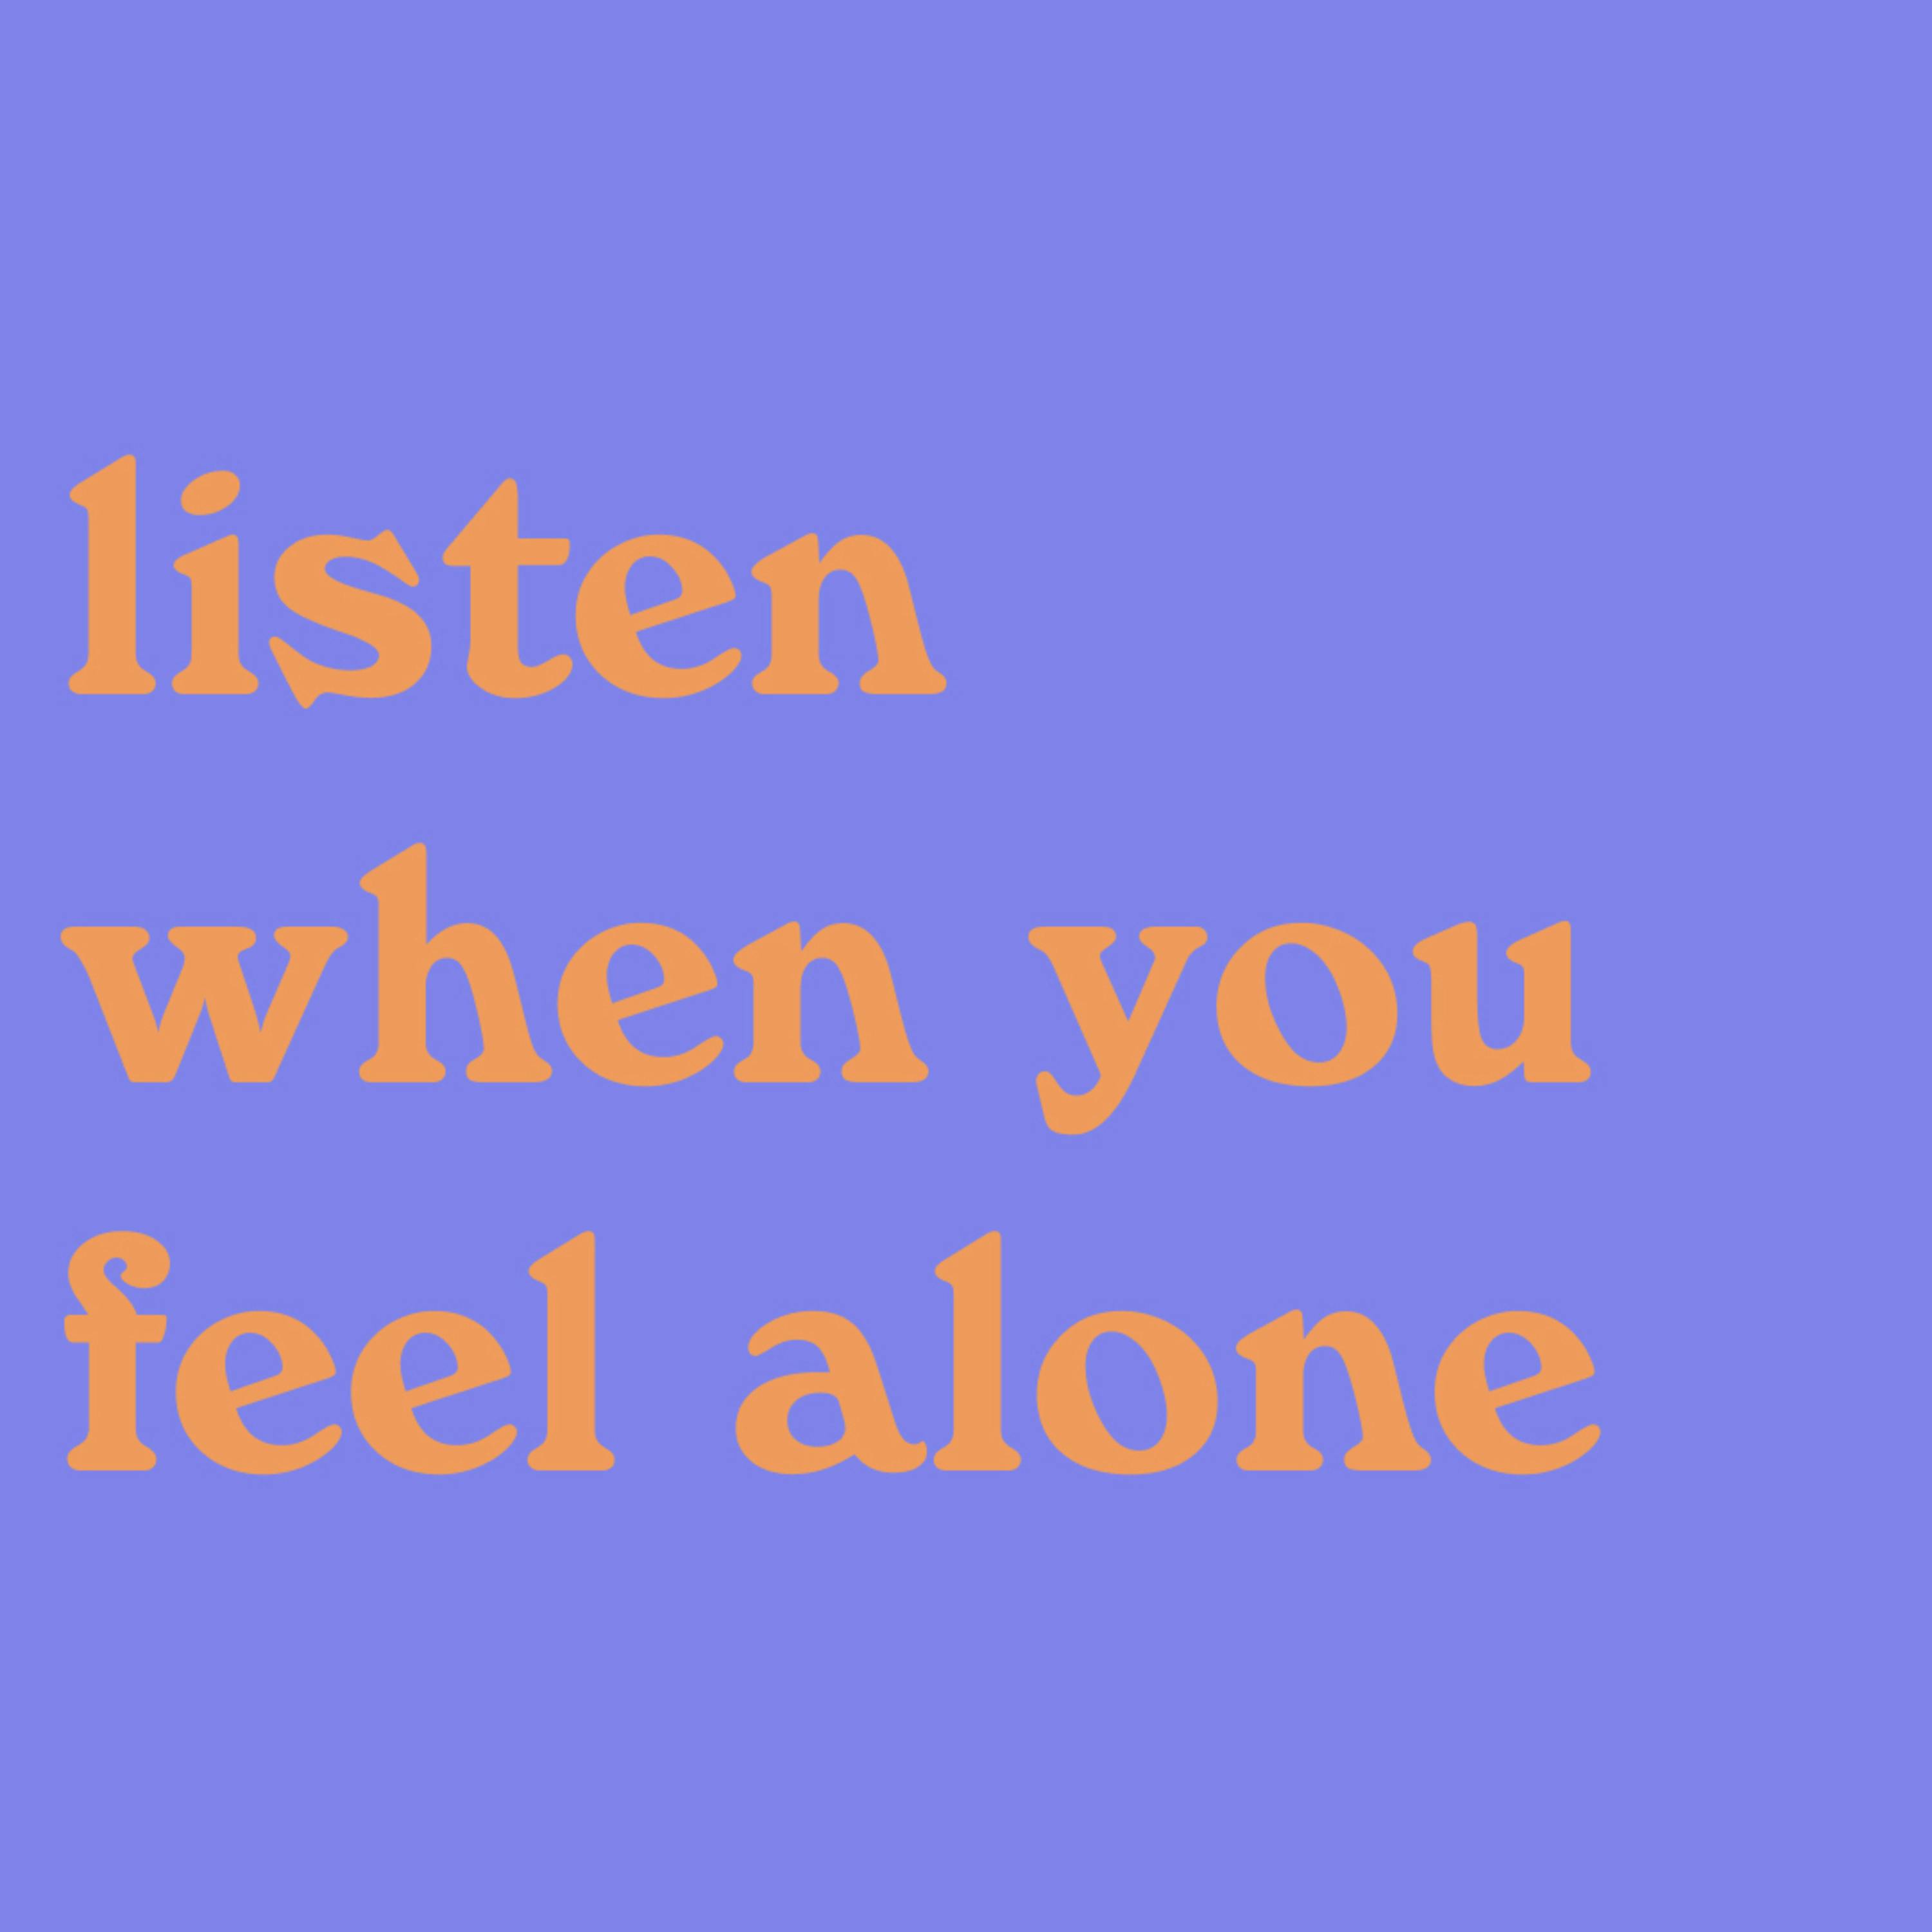 Listen when you feel alone